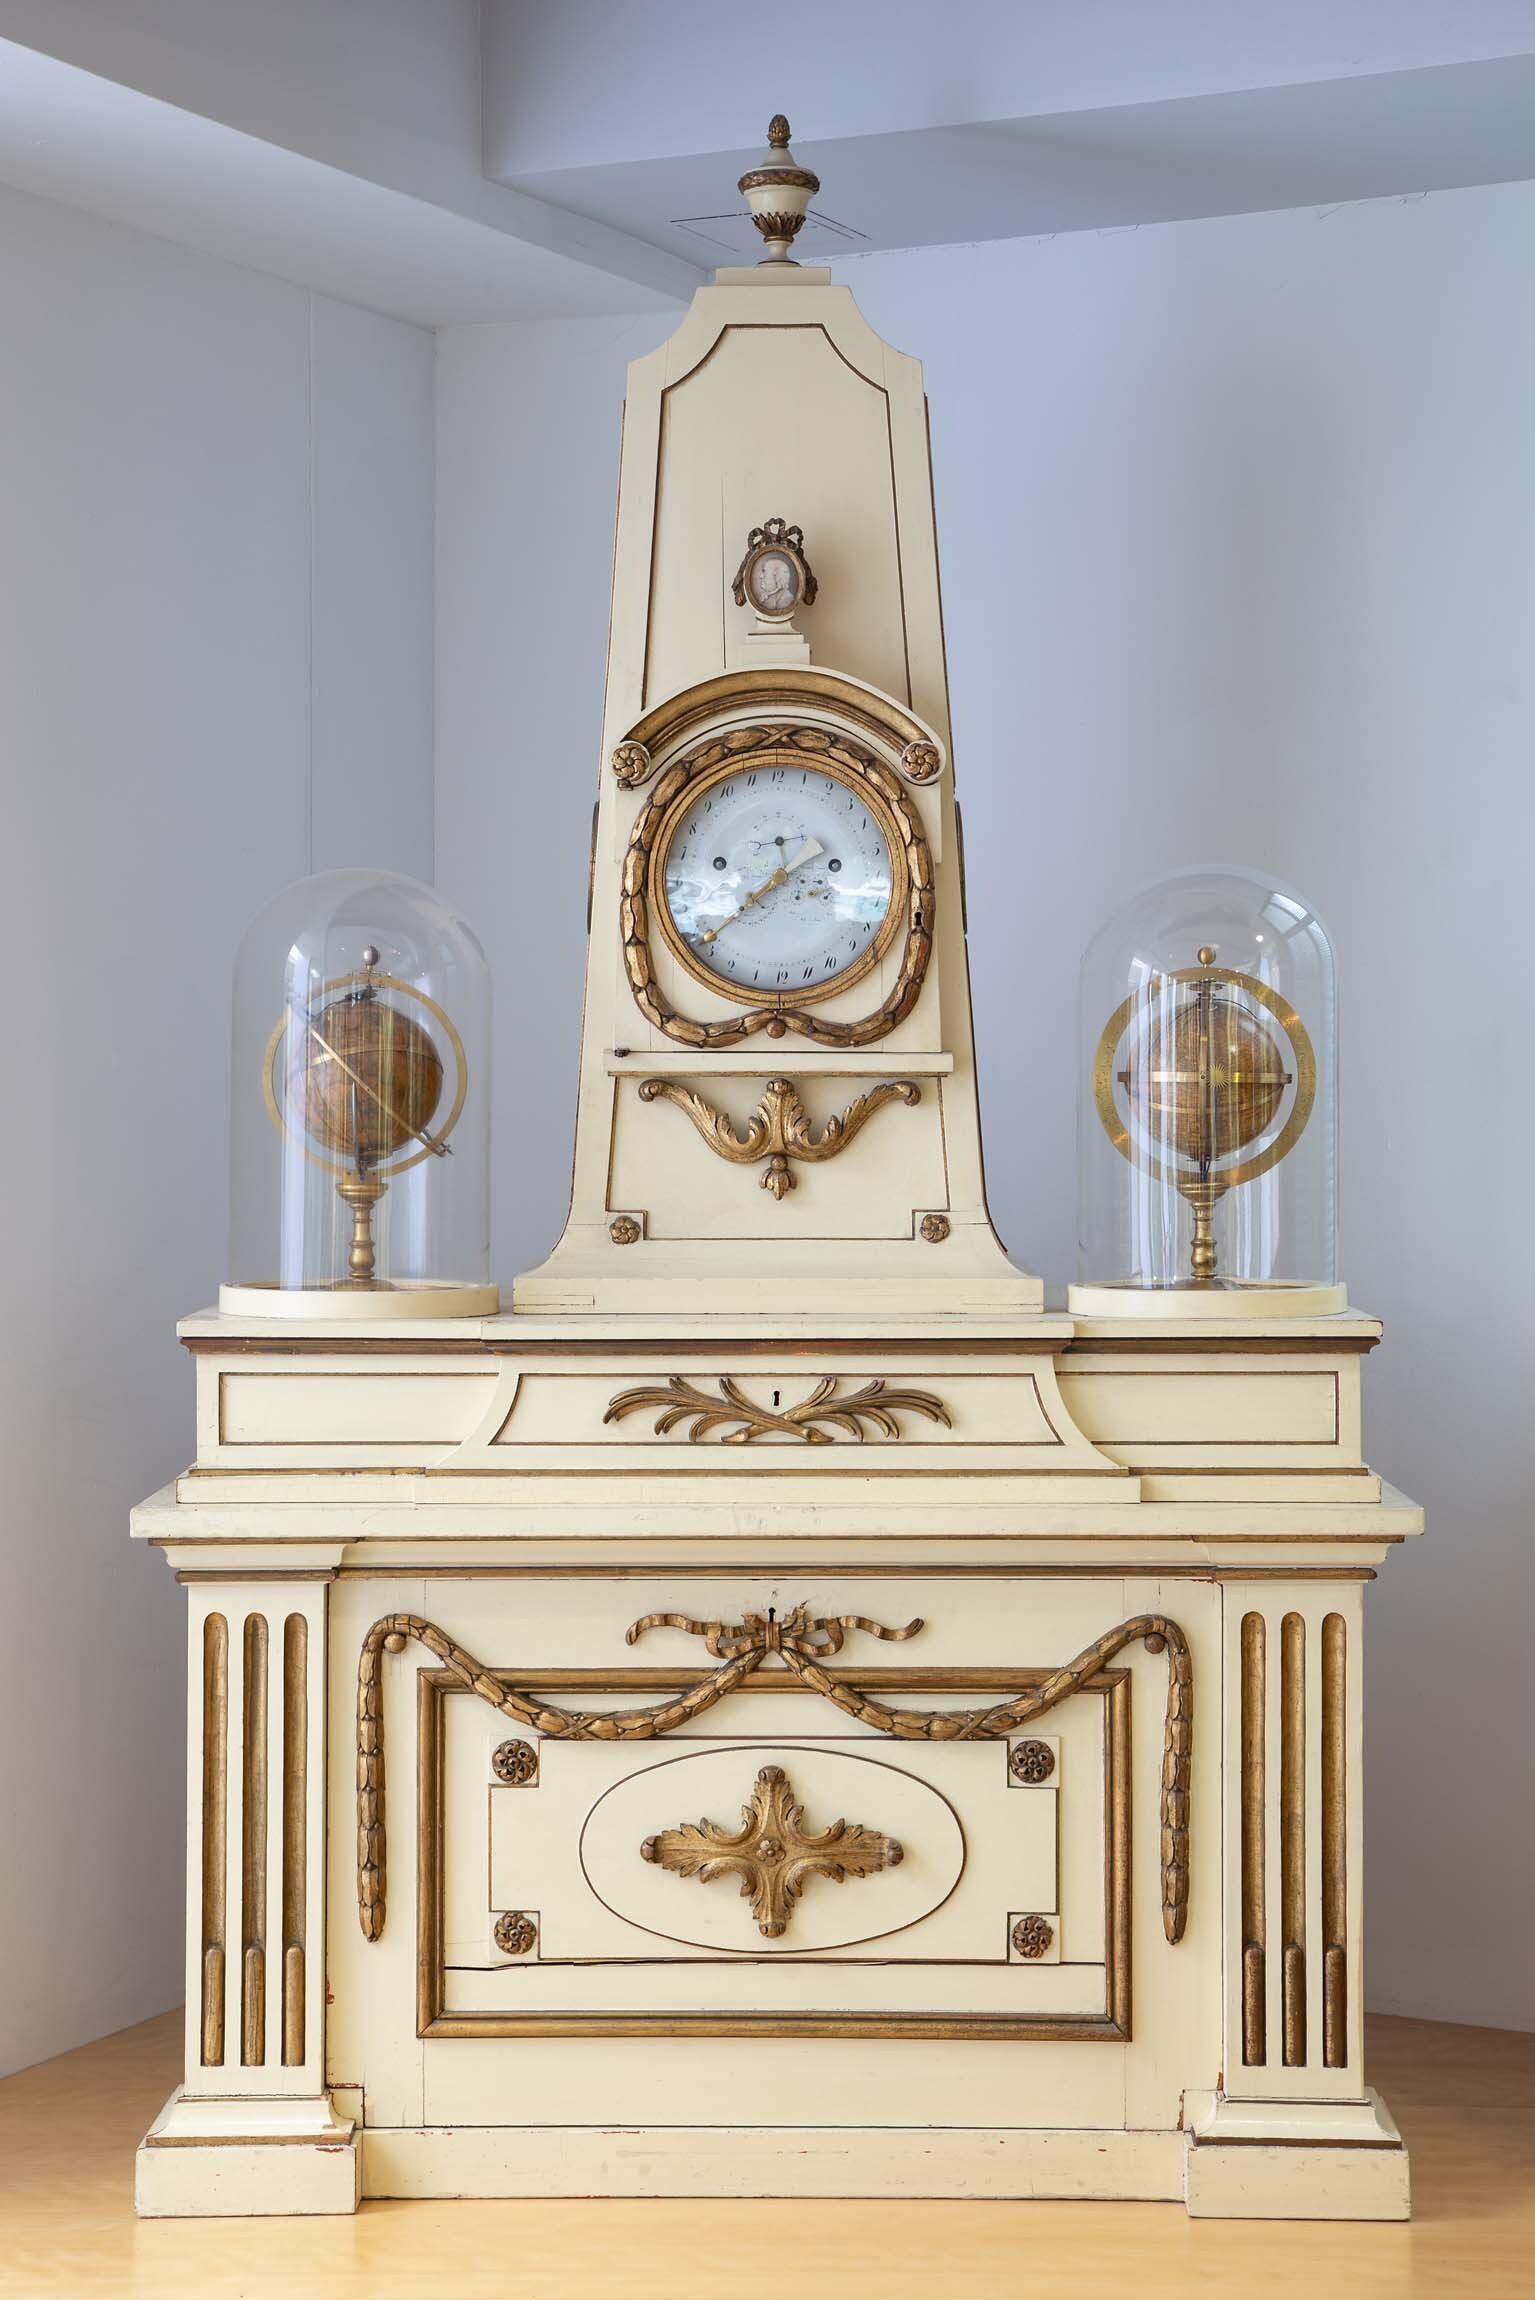 Astronomische Uhr, Philipp Matthäus Hahn, Echterdingen, um 1785 (Deutsches Uhrenmuseum CC BY-SA)